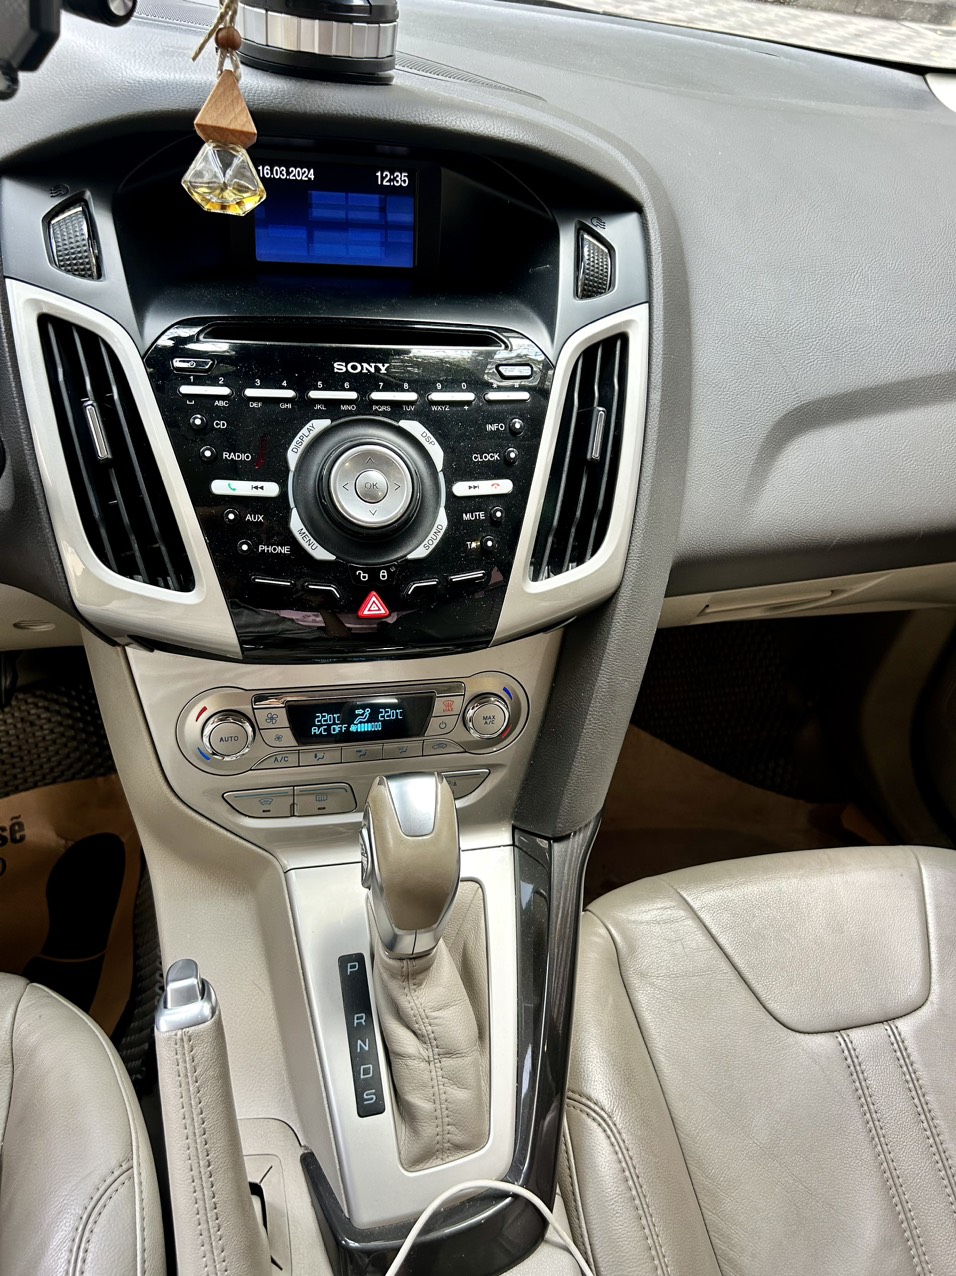 Ford Focus 2015 AT sedan 2.0 360 triệu. Xe nét kèo thơm